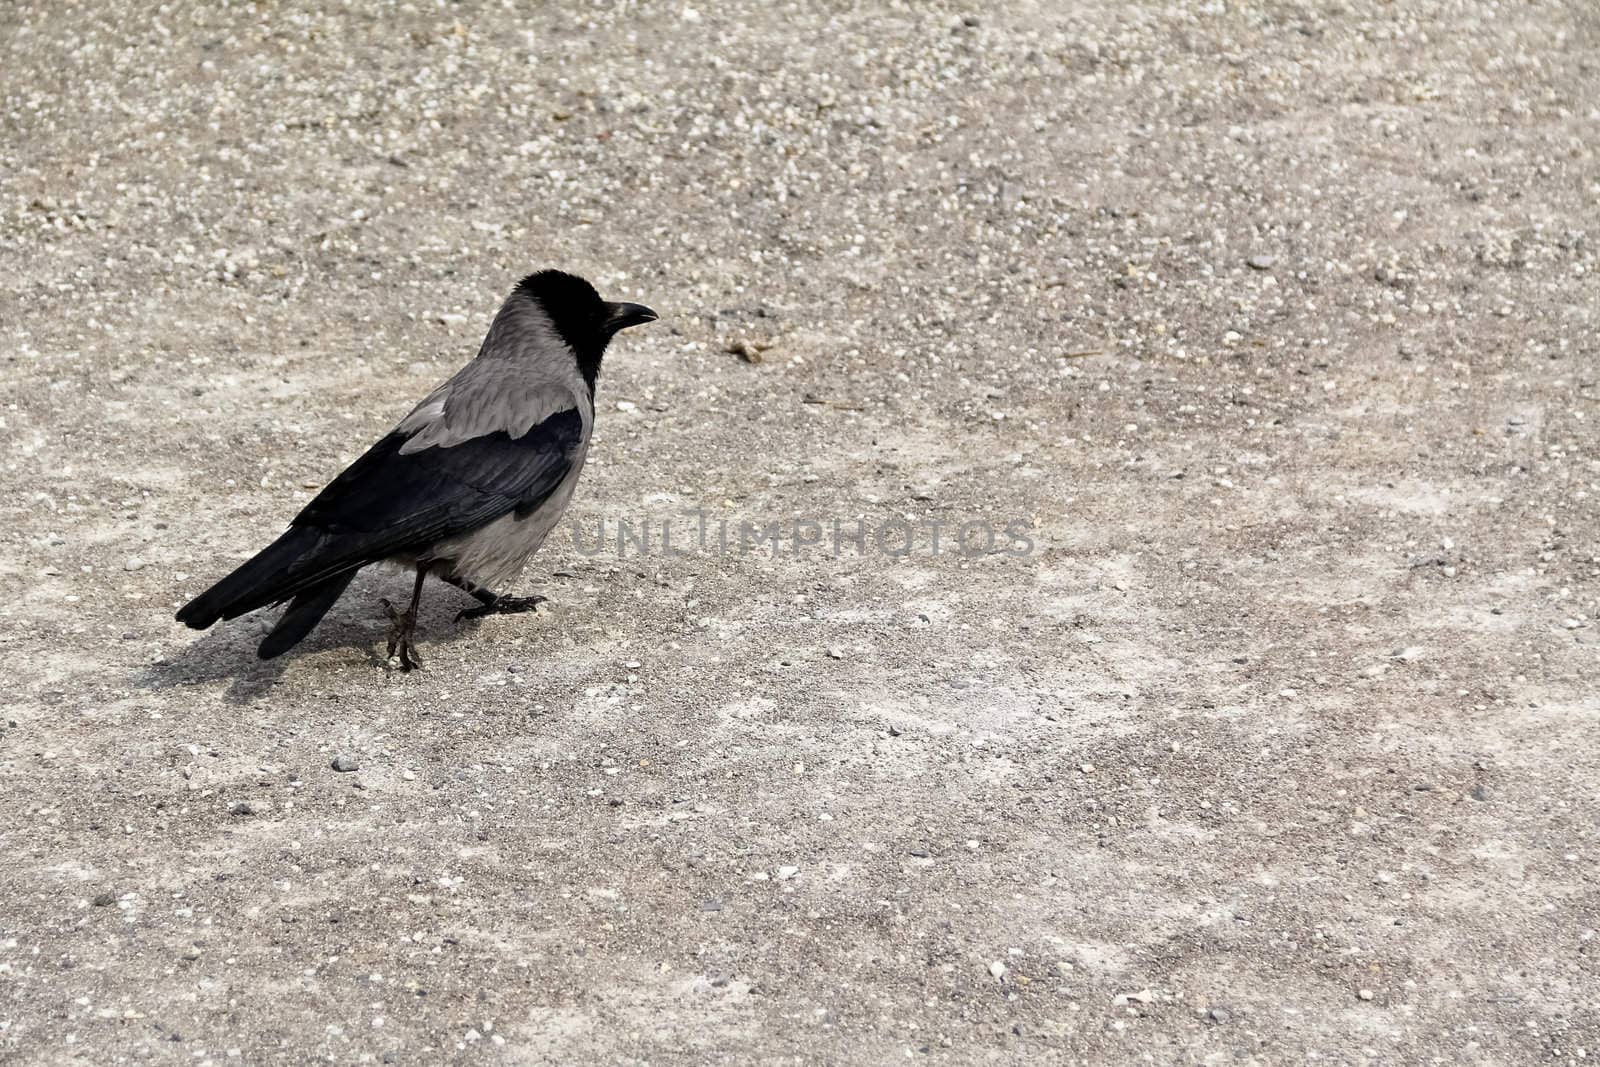 A bird walking on gravel in castle Belvedere, Vienna, Austria